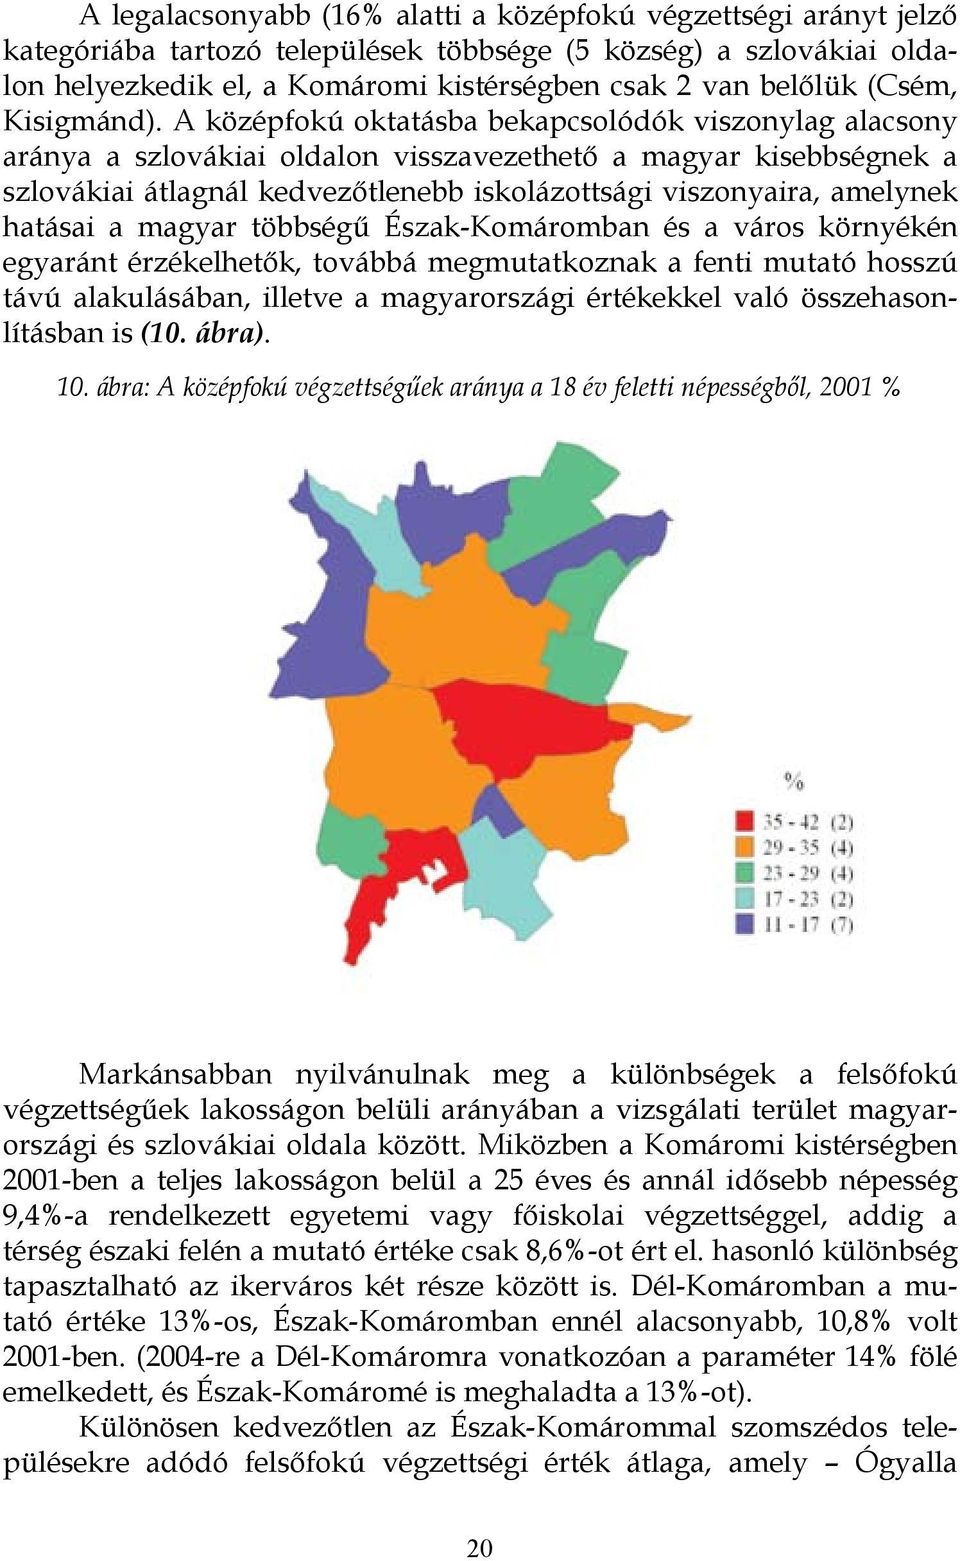 A középfokú oktatásba bekapcsolódók viszonylag alacsony aránya a szlovákiai oldalon visszavezethető a magyar kisebbségnek a szlovákiai átlagnál kedvezőtlenebb iskolázottsági viszonyaira, amelynek